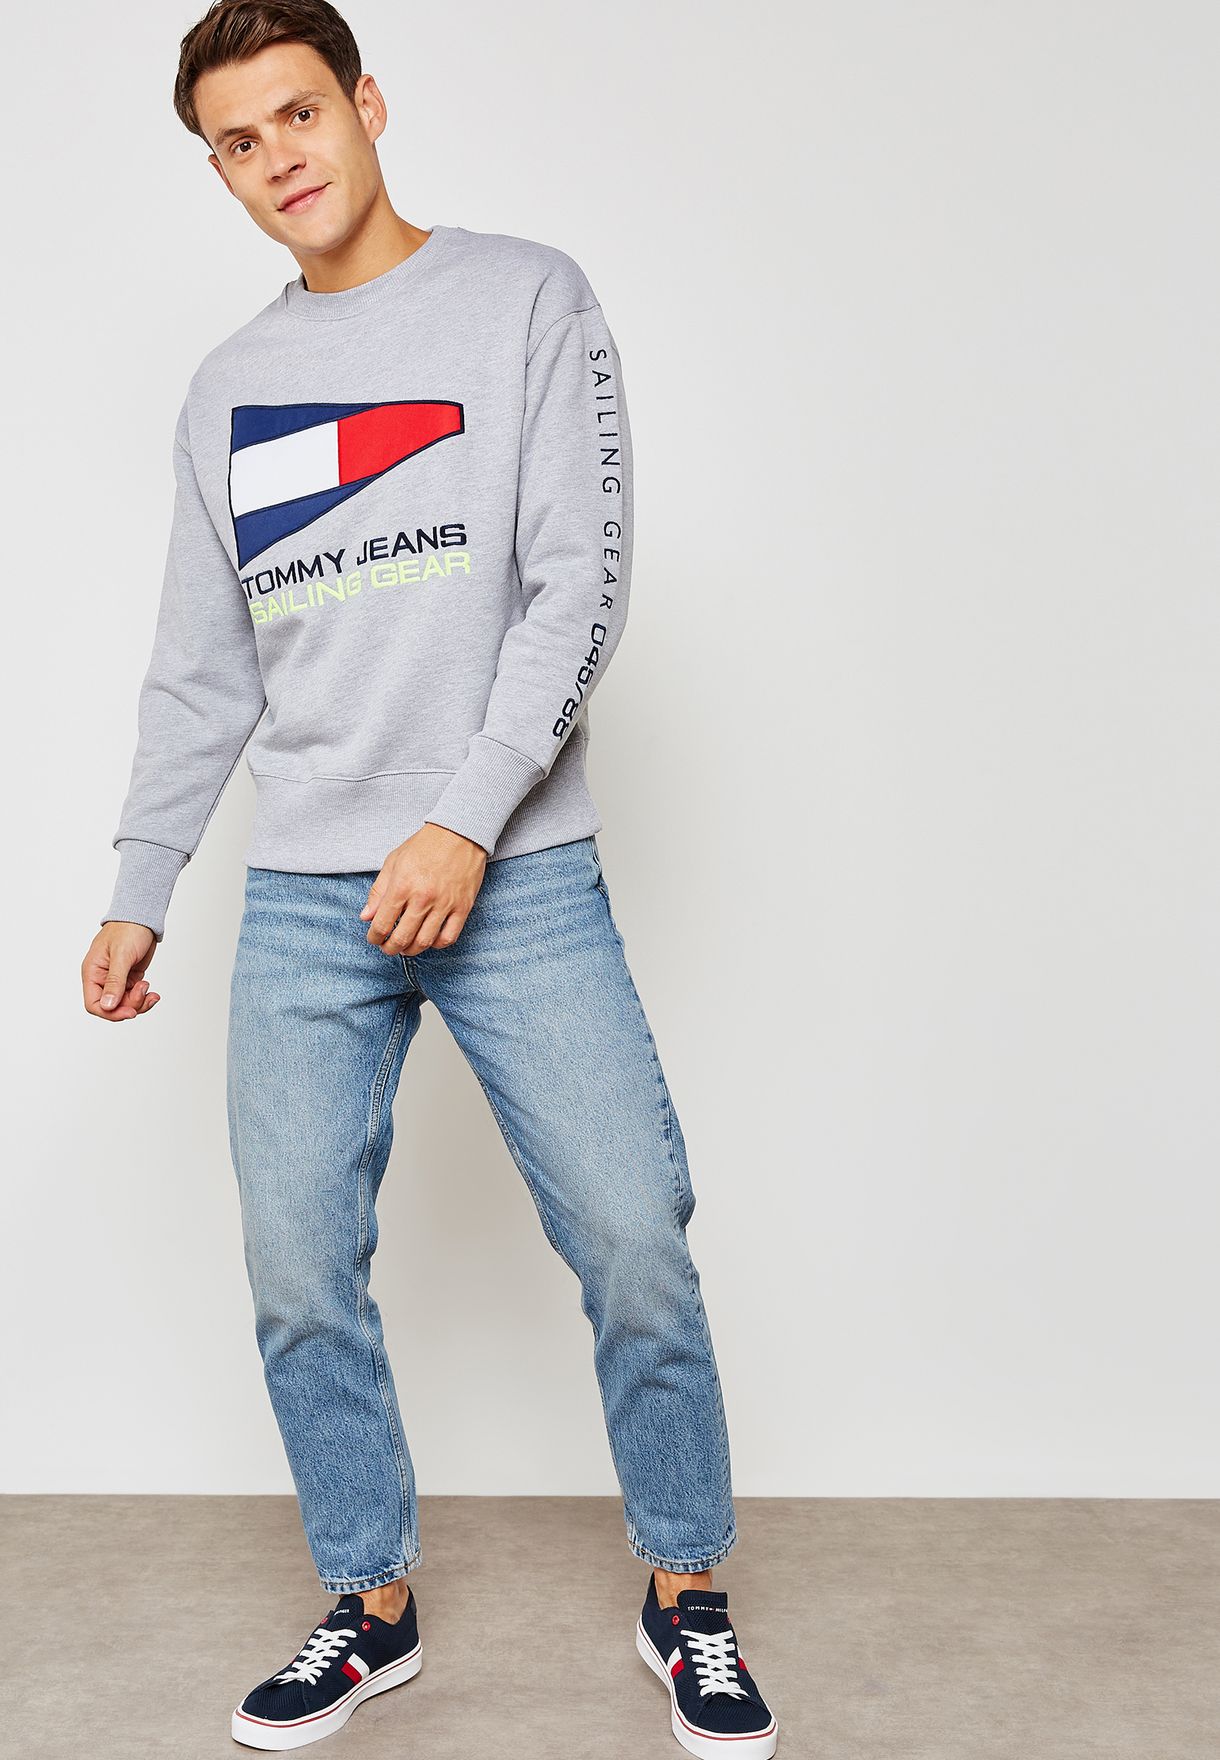 tommy jeans sailing gear sweatshirt